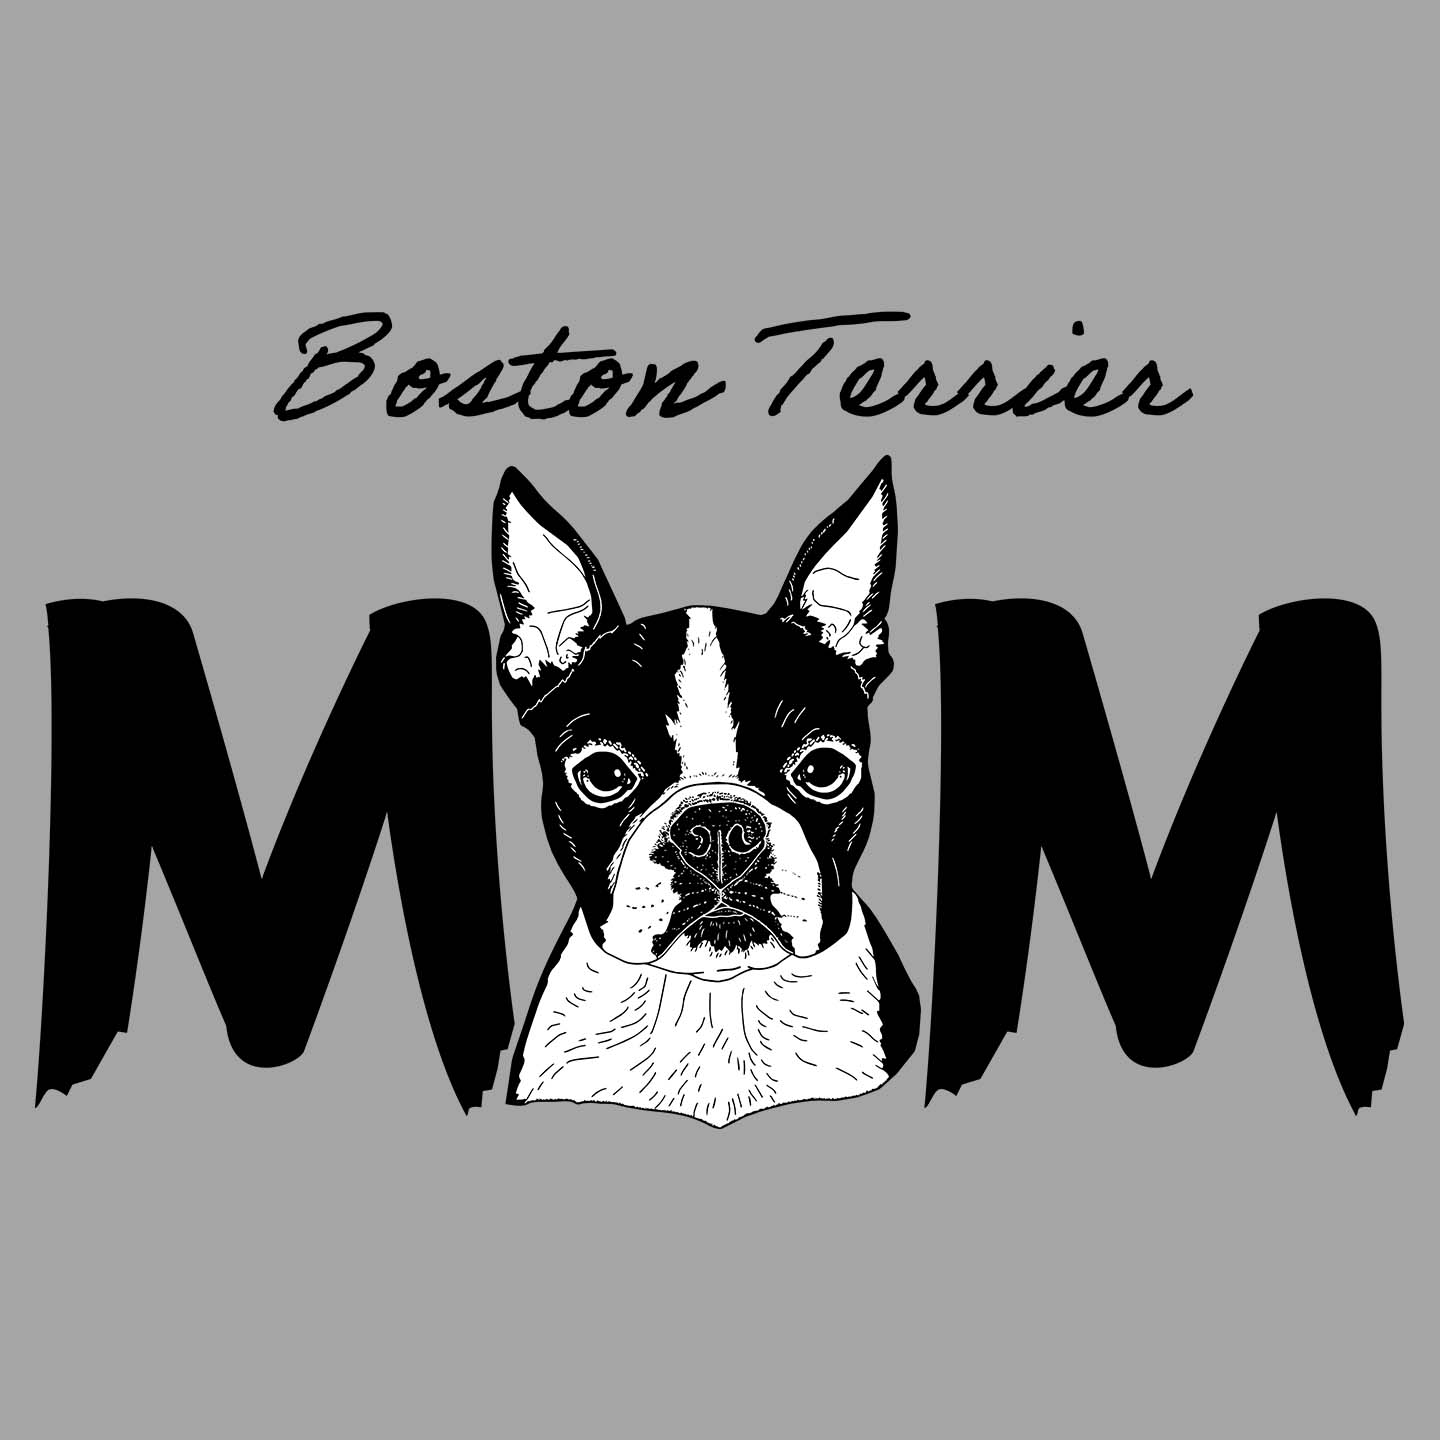 Boston Terrier Breed Mom - Women's V-Neck T-Shirt